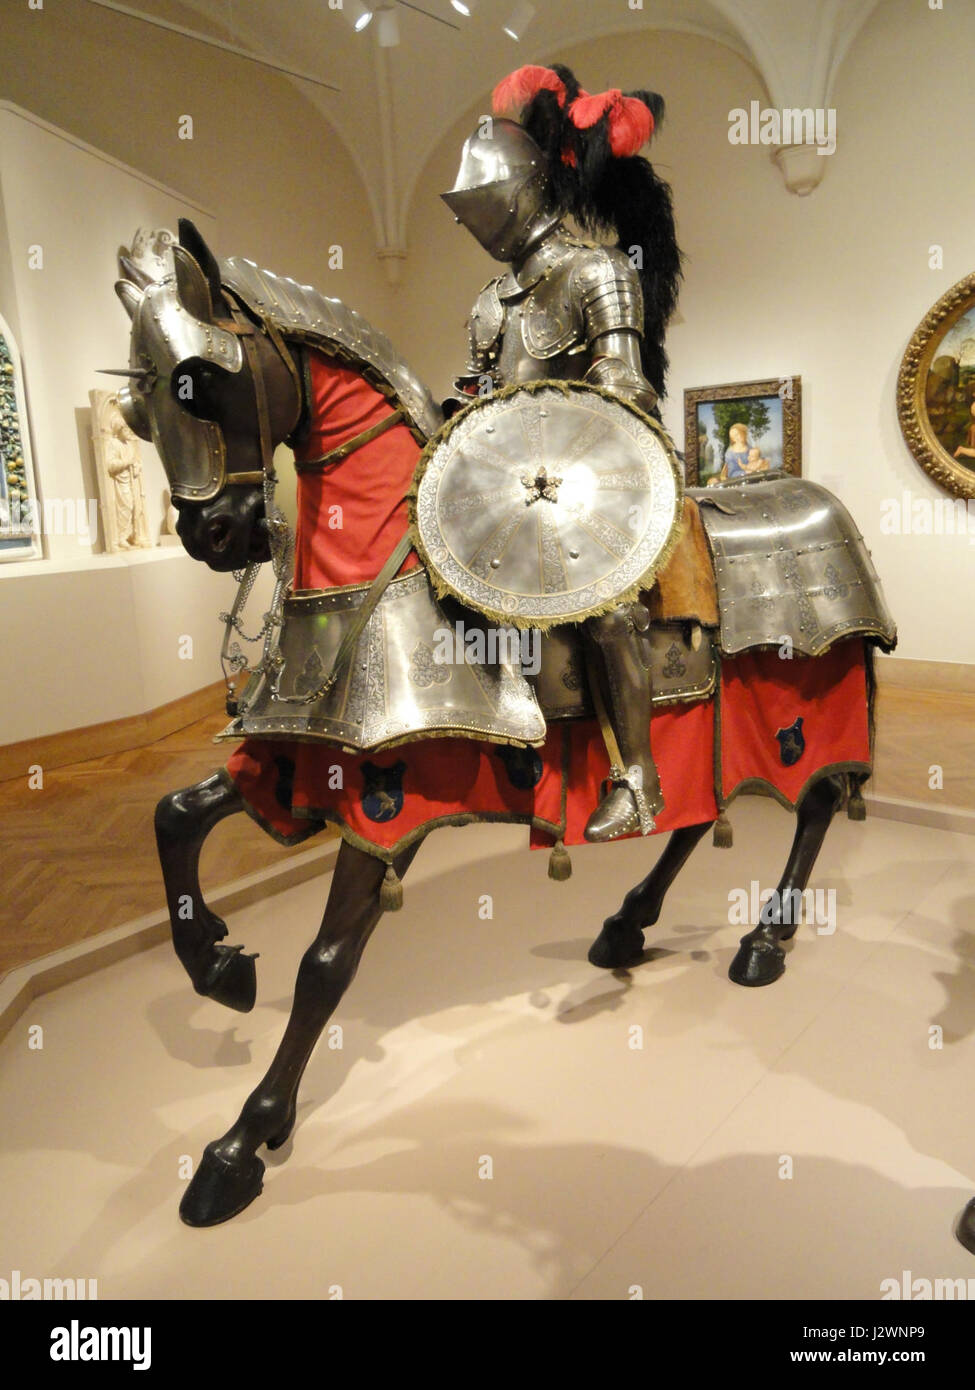 Rüstung für Mensch und Pferd, Italien (wahrscheinlich Mailand), c. 1565 - Nelson-Atkins Museum of Art - DSC08600 Stockfoto